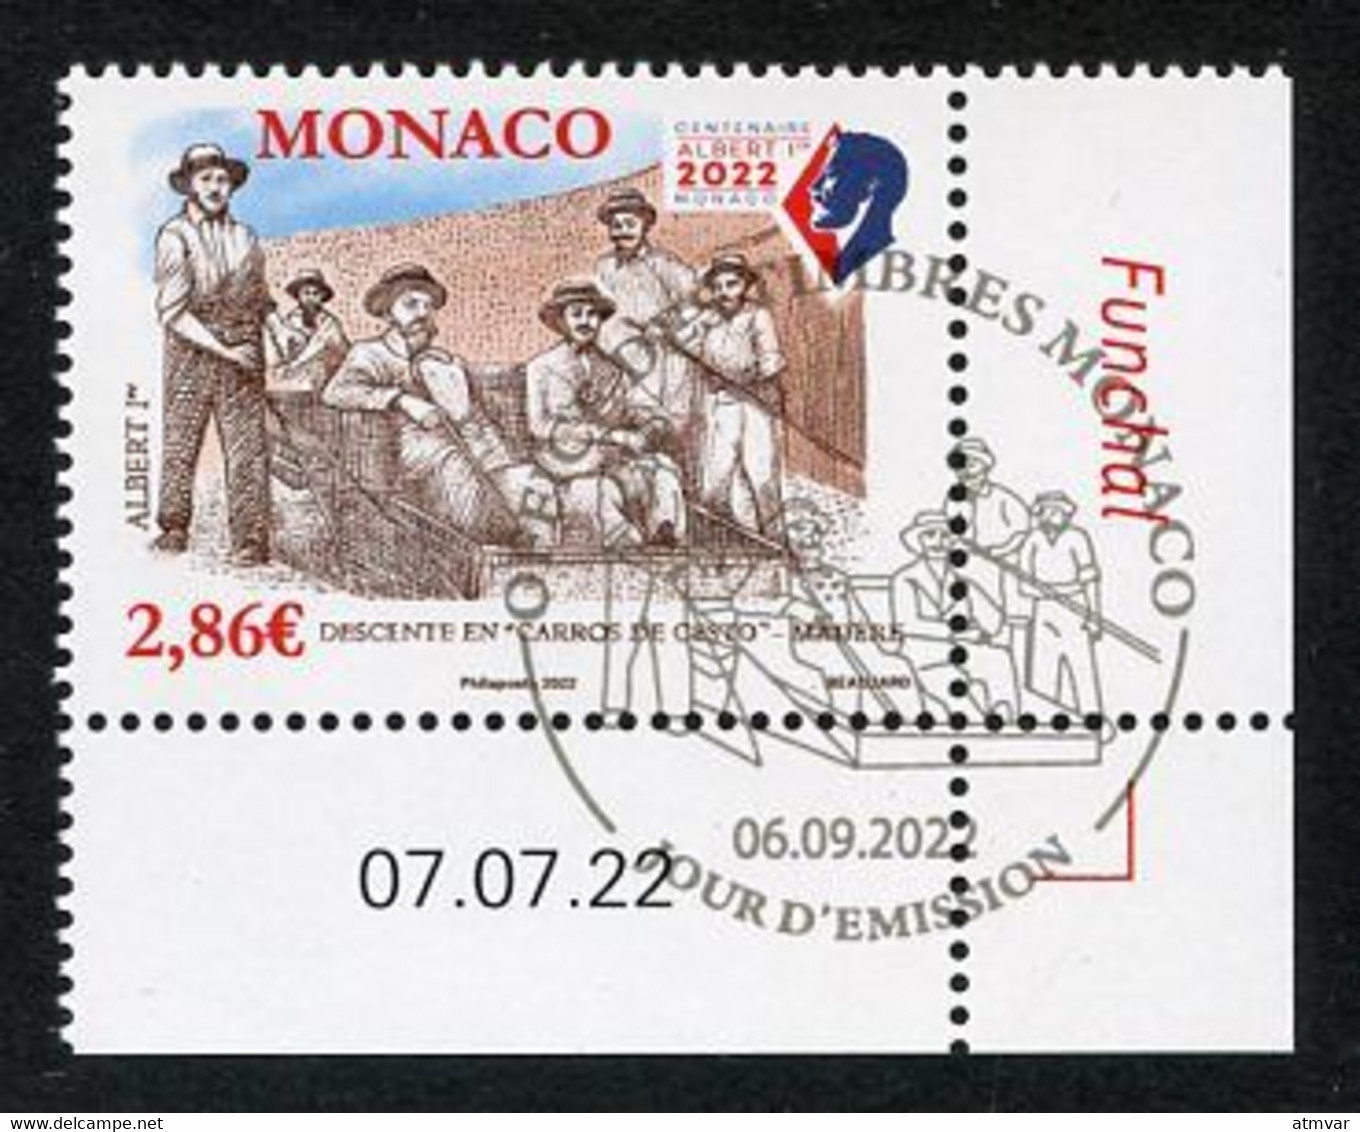 MONACO (2022) Albert 1er Madère Madeira Funchal, Descente En Carros De Cesto - Coin Daté - Usados